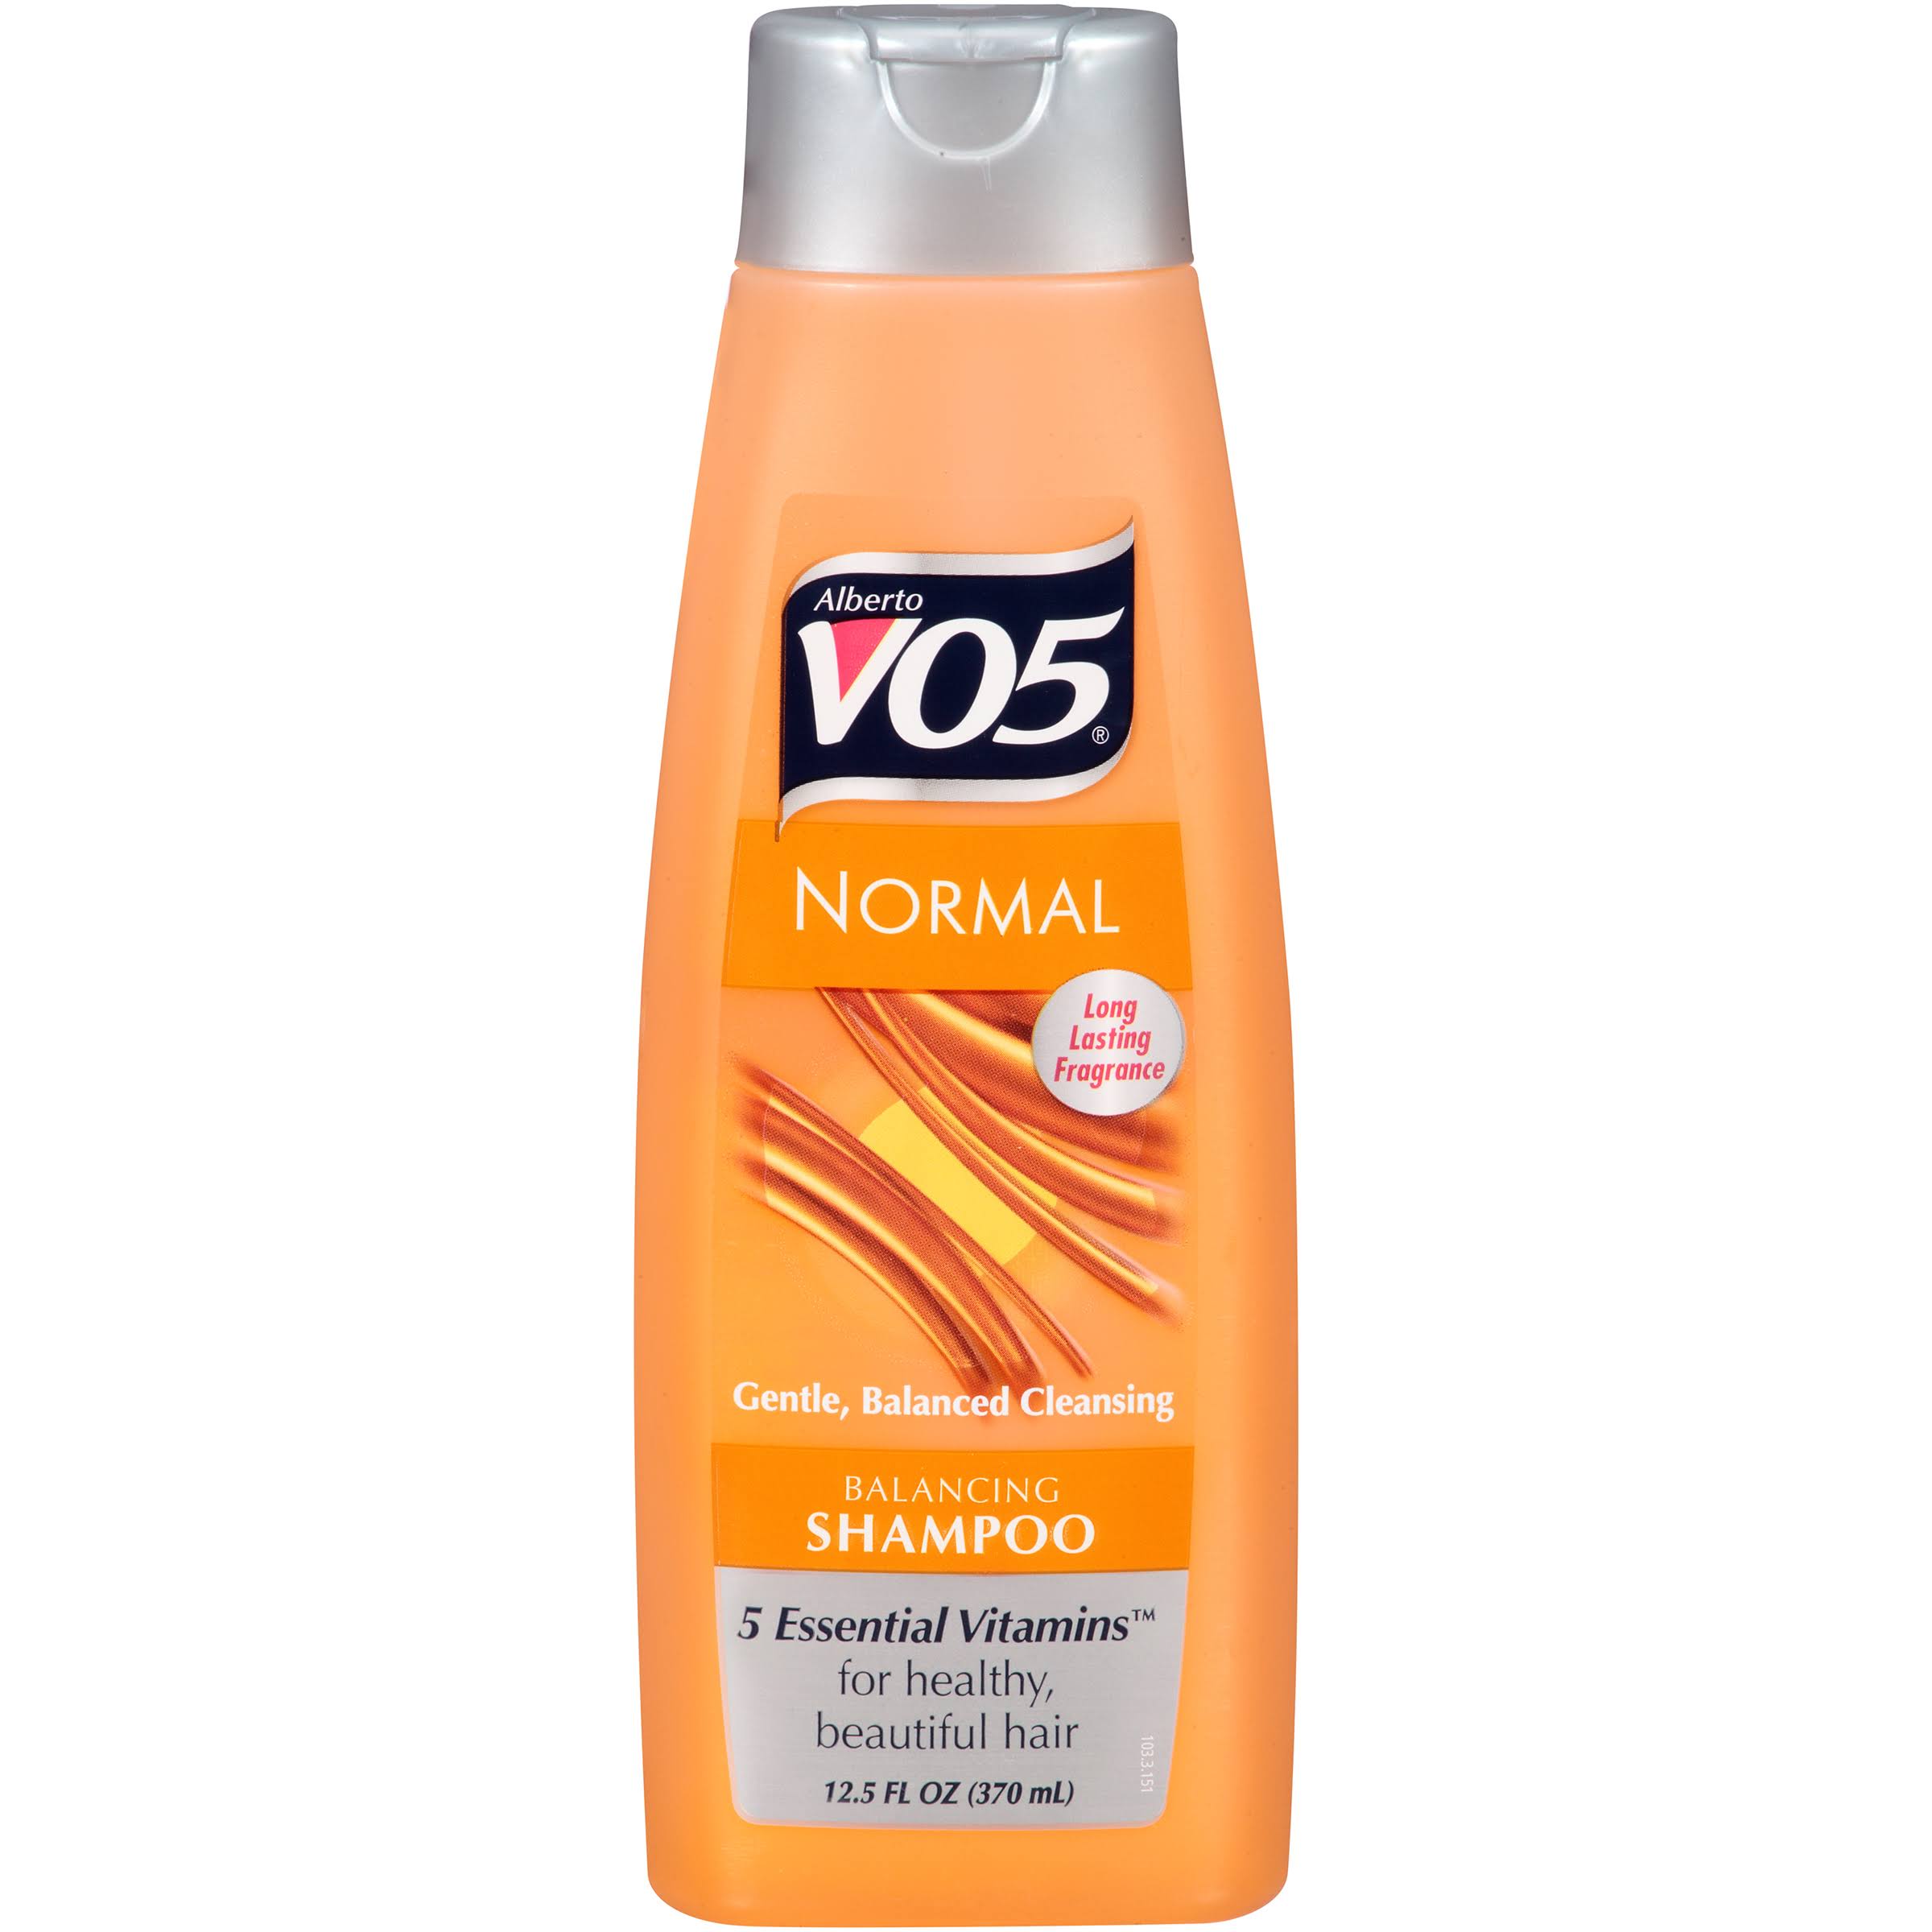 Alberto Vo5 Normal Shampoo - 370ml